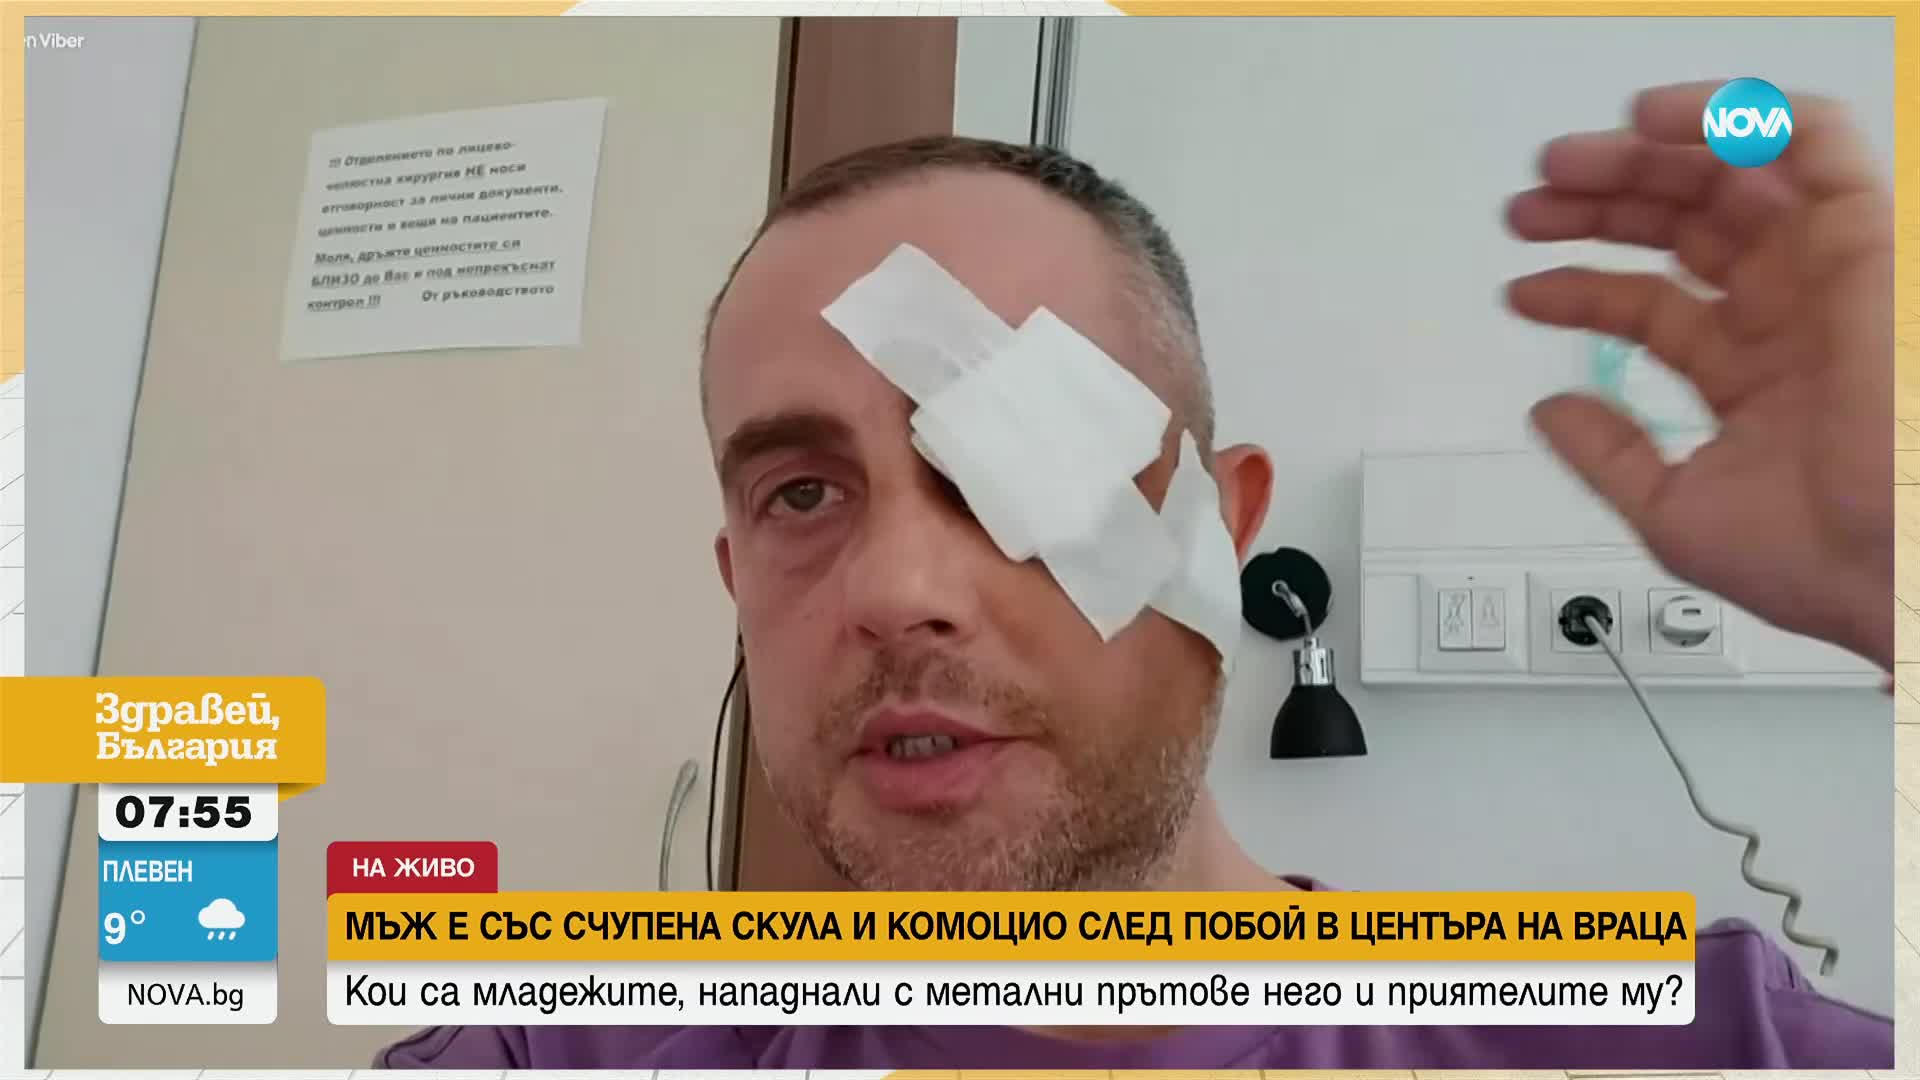 Счупена скула и комоцио след побой: Мъж твърди, че банда напада хора във Враца